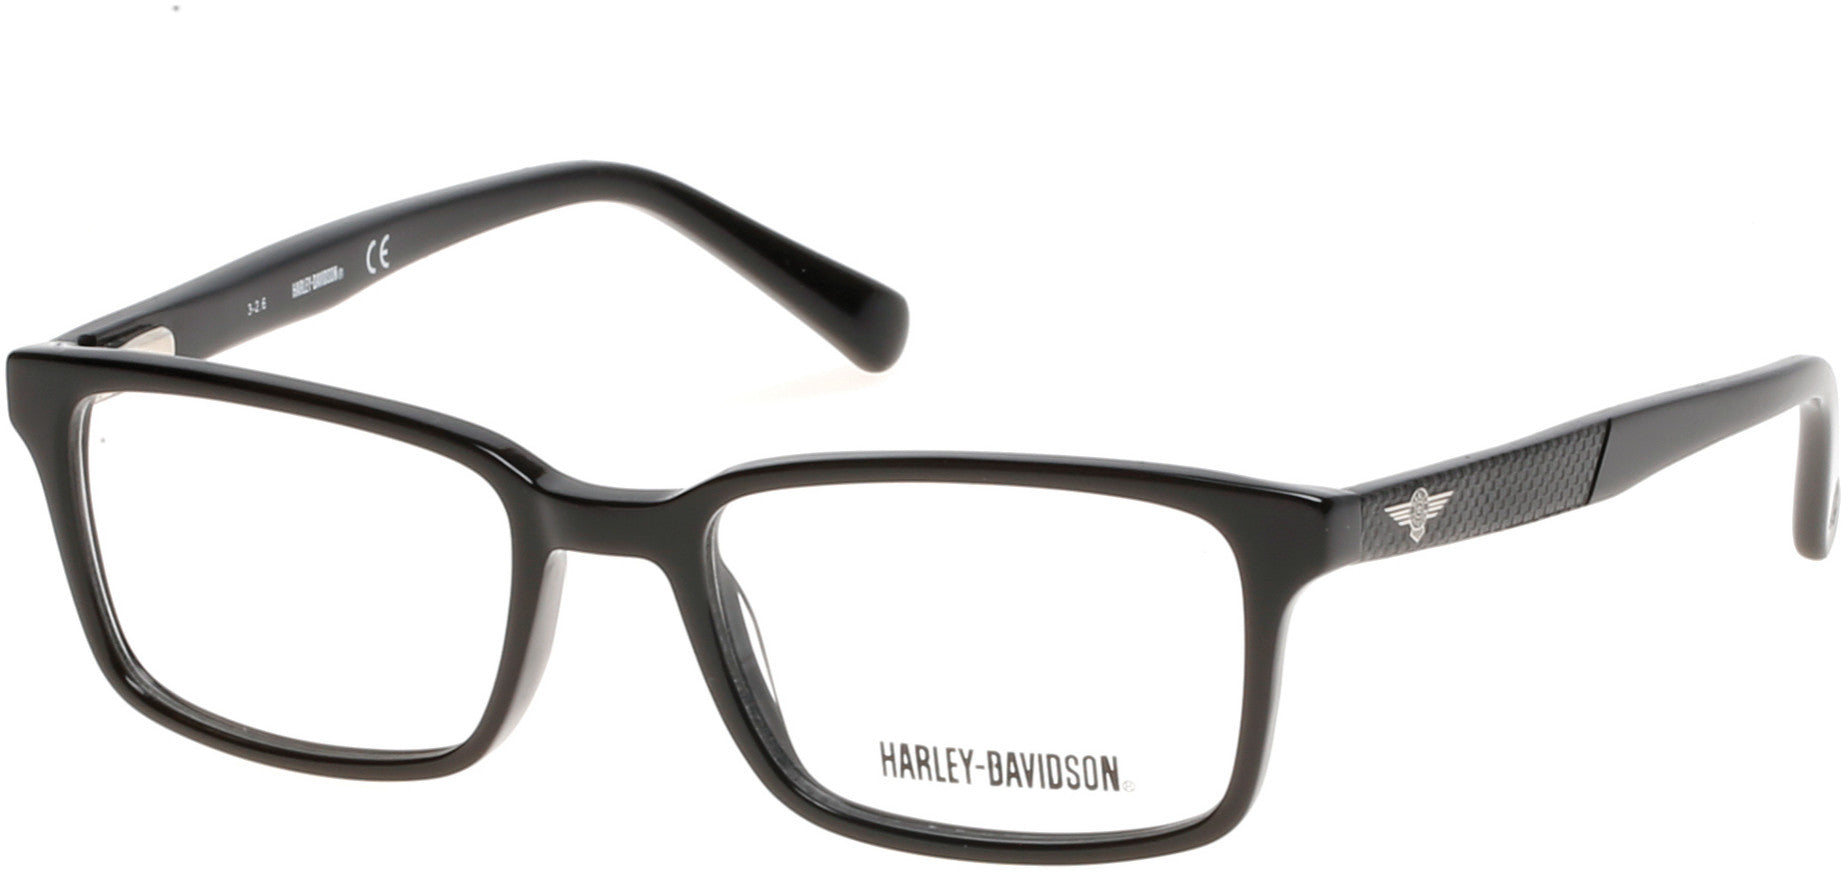 Harley-Davidson HD0127T Eyeglasses 001-001 - Shiny Black